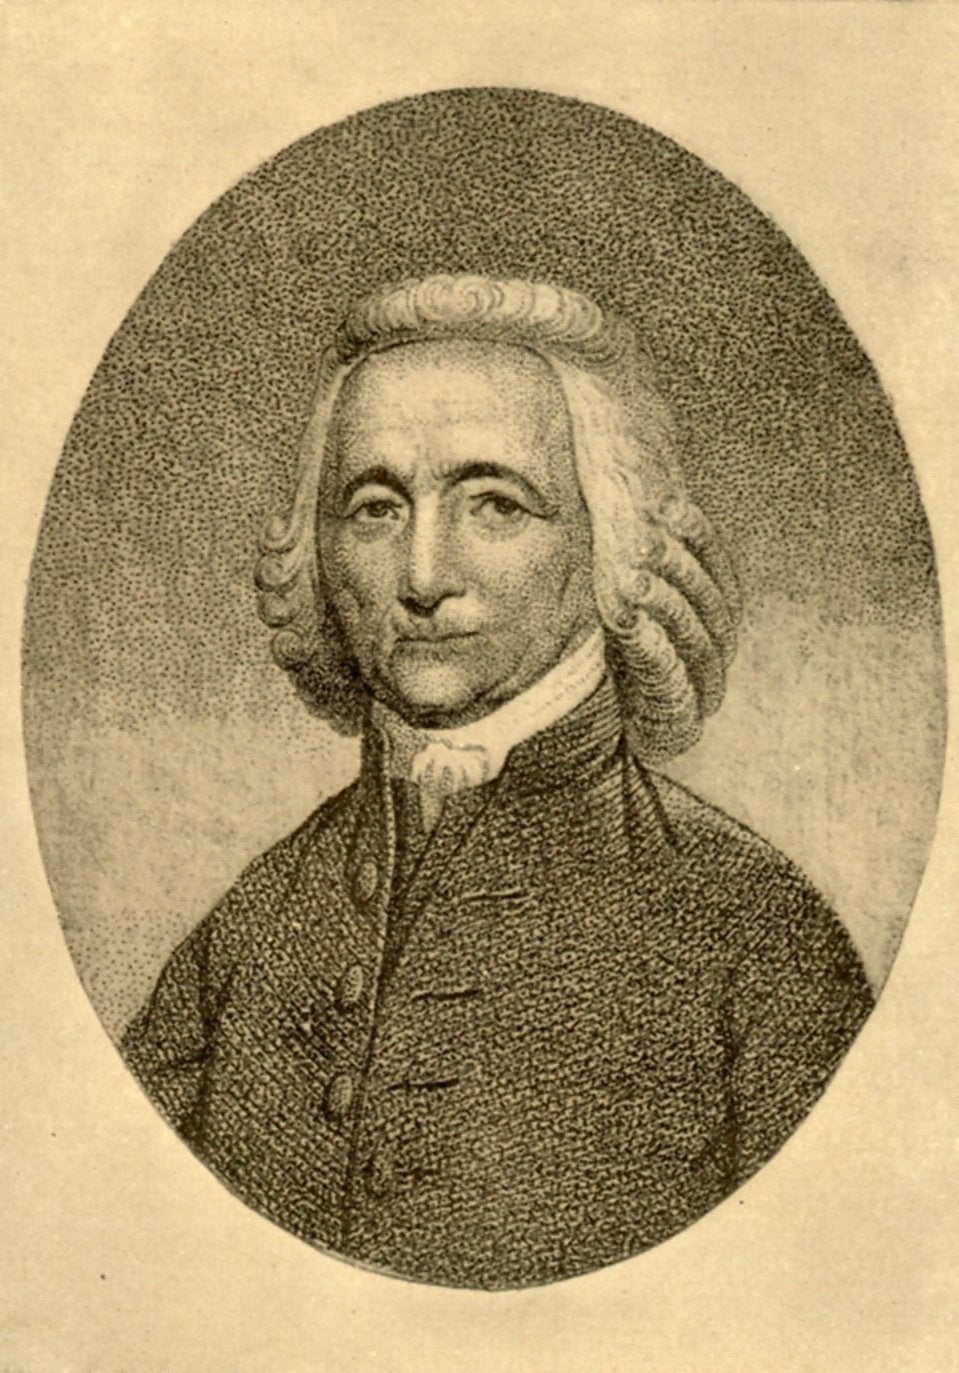 John Redman, c. 1790